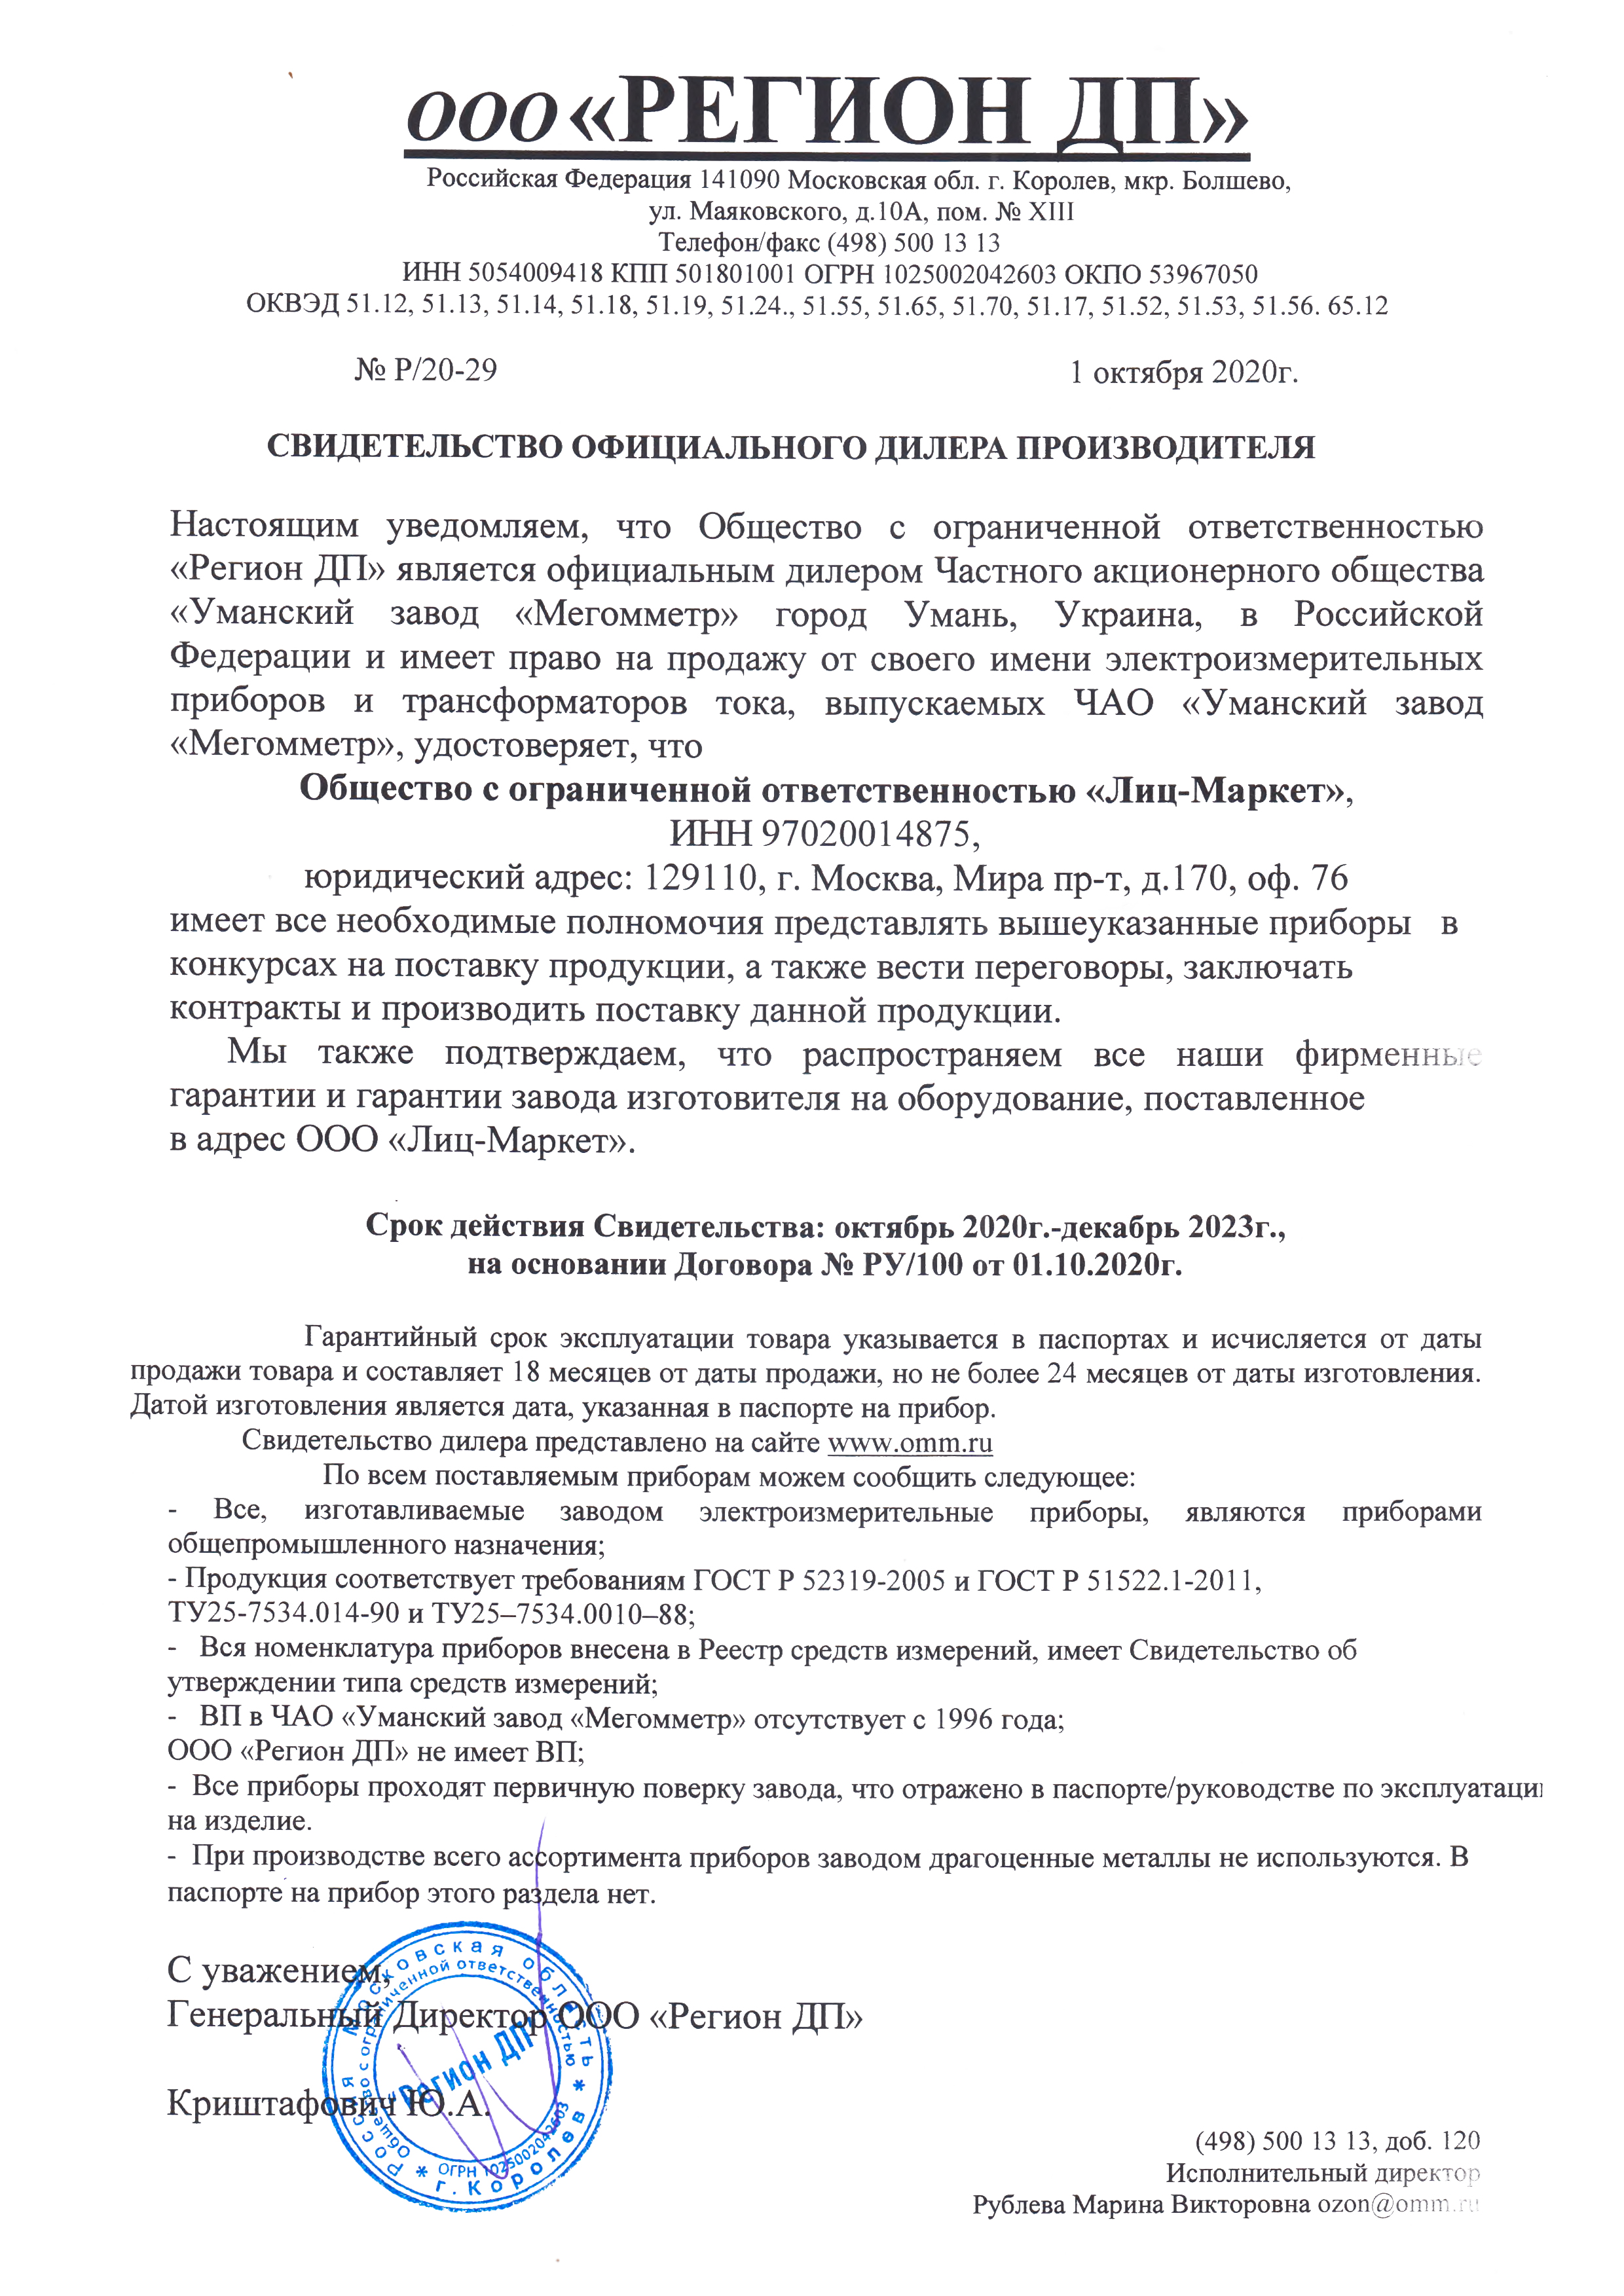 Сертификат дилера Регион ДП